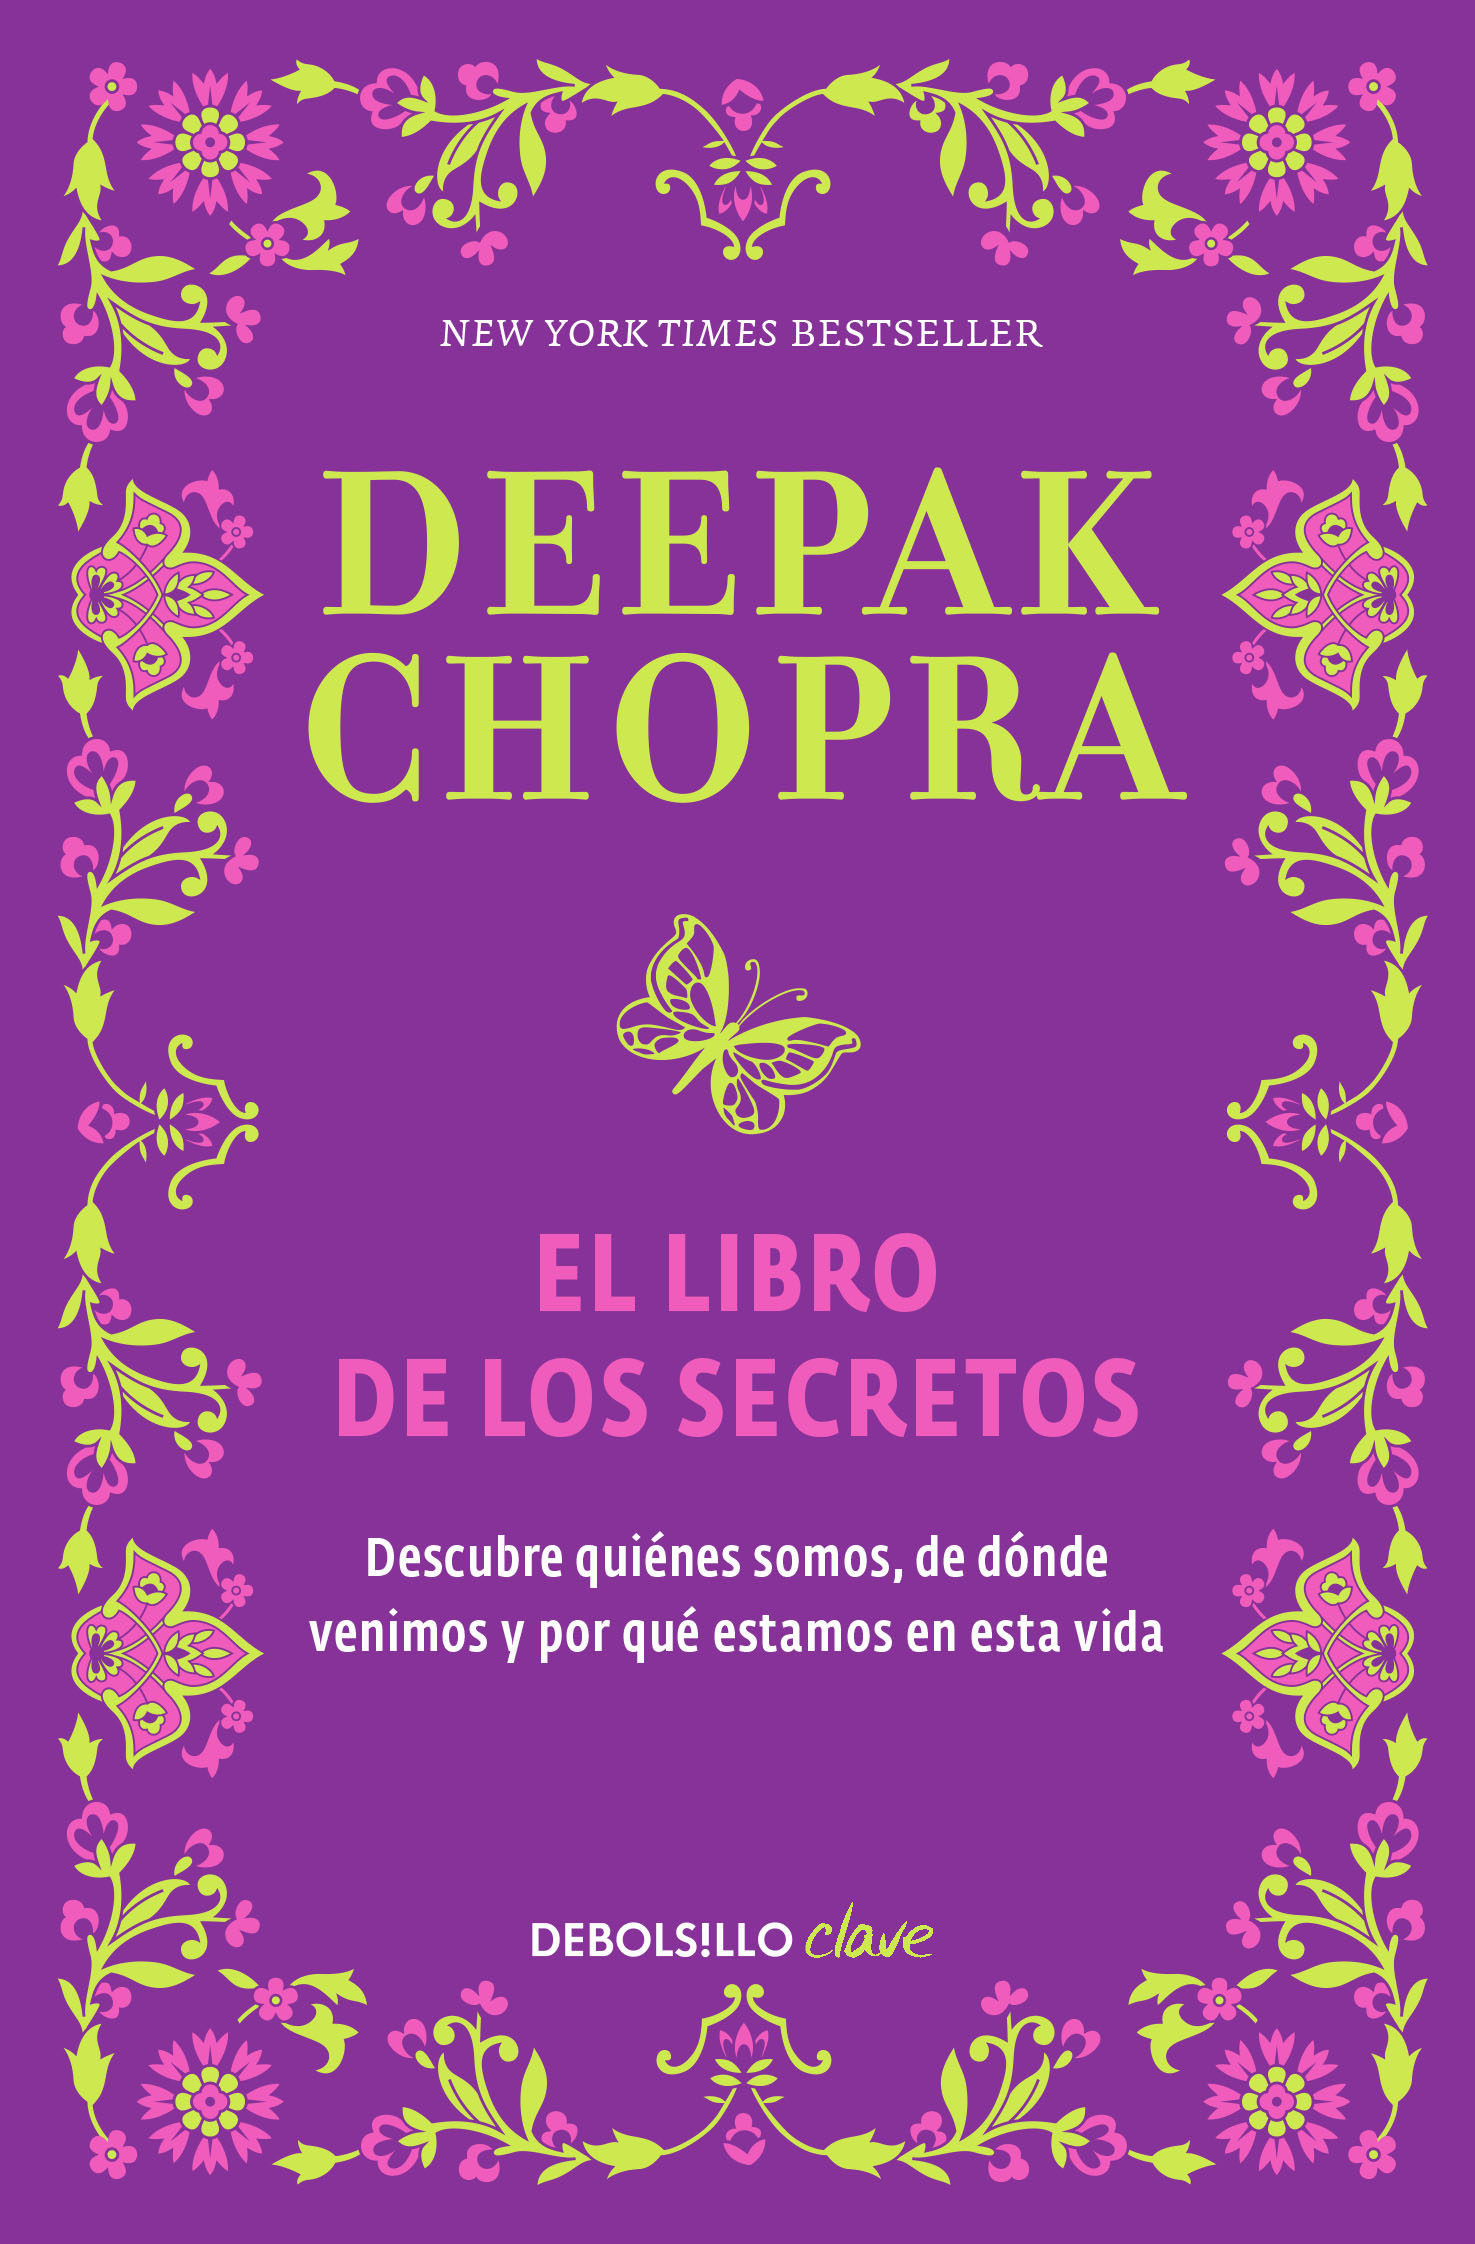 Imagen El Libro de los secretos. Deepak Chopra 1